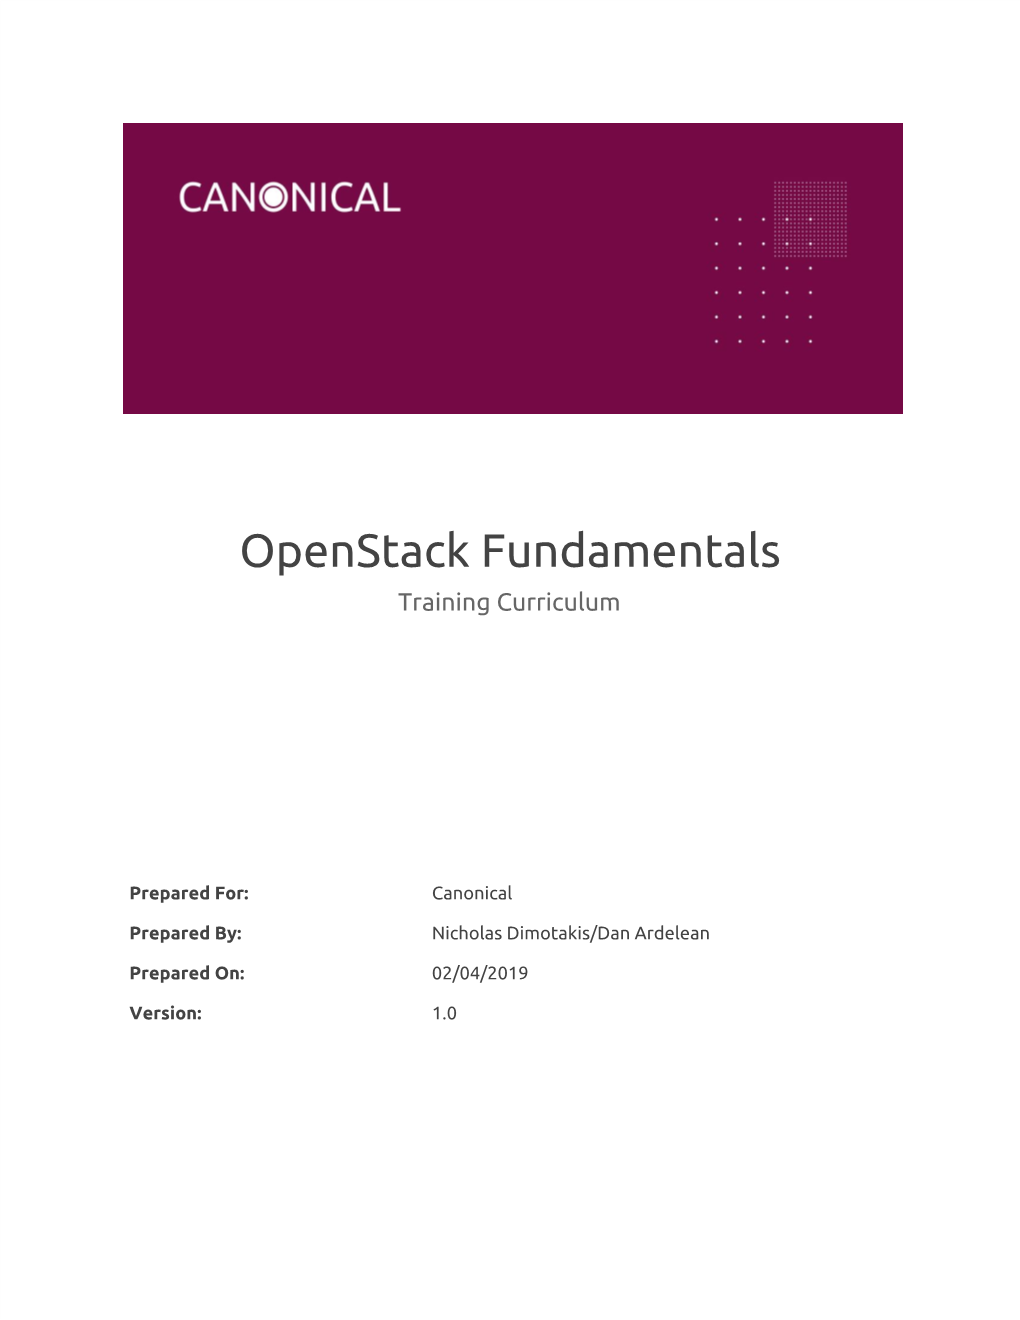 Openstack Fundamentals Training Curriculum